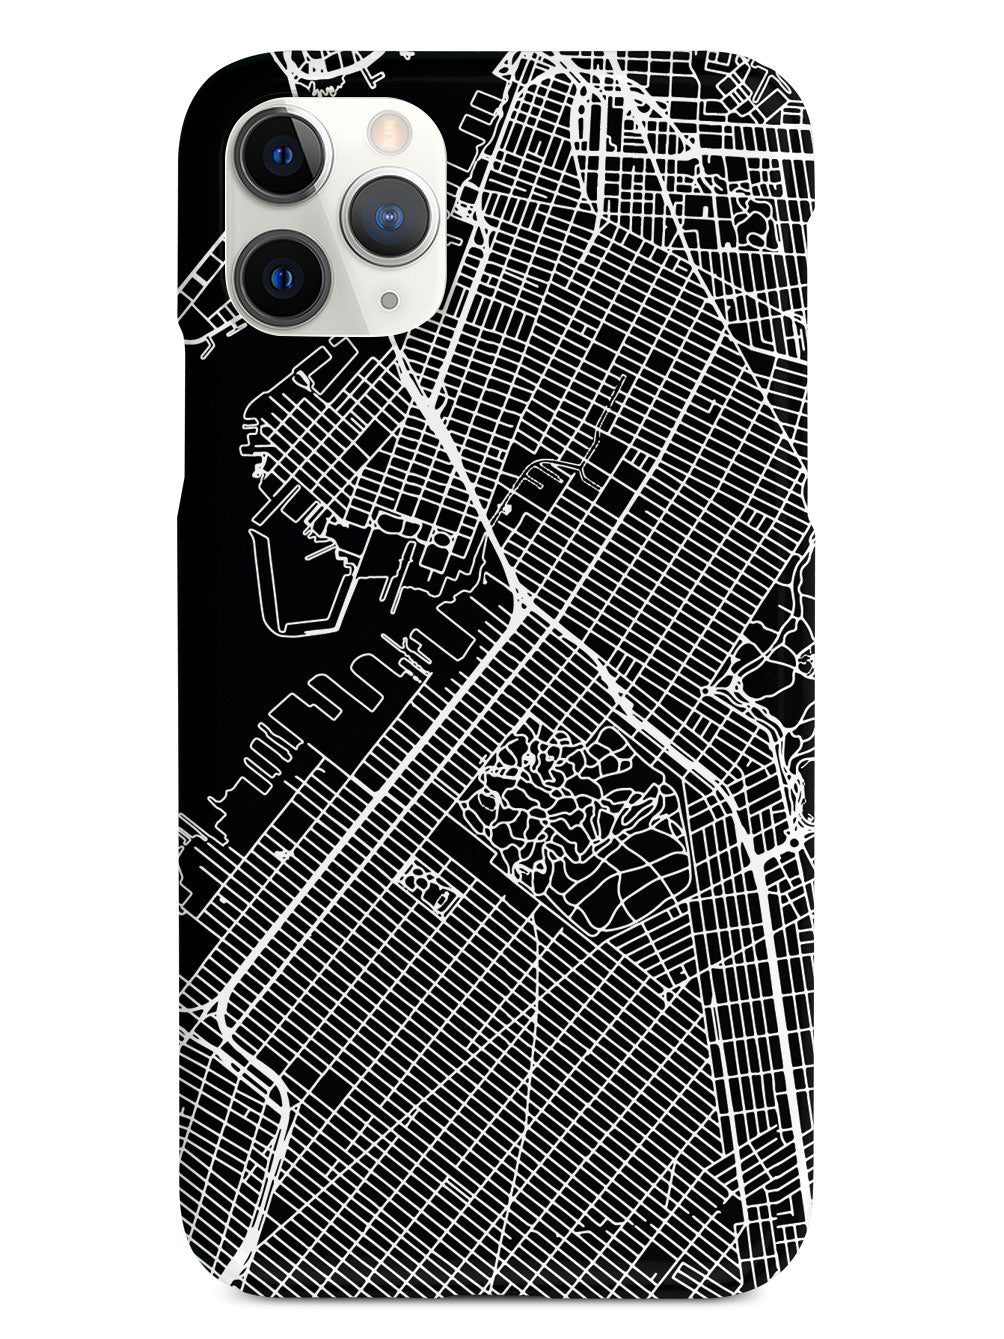 Map - Brooklyn New York Case